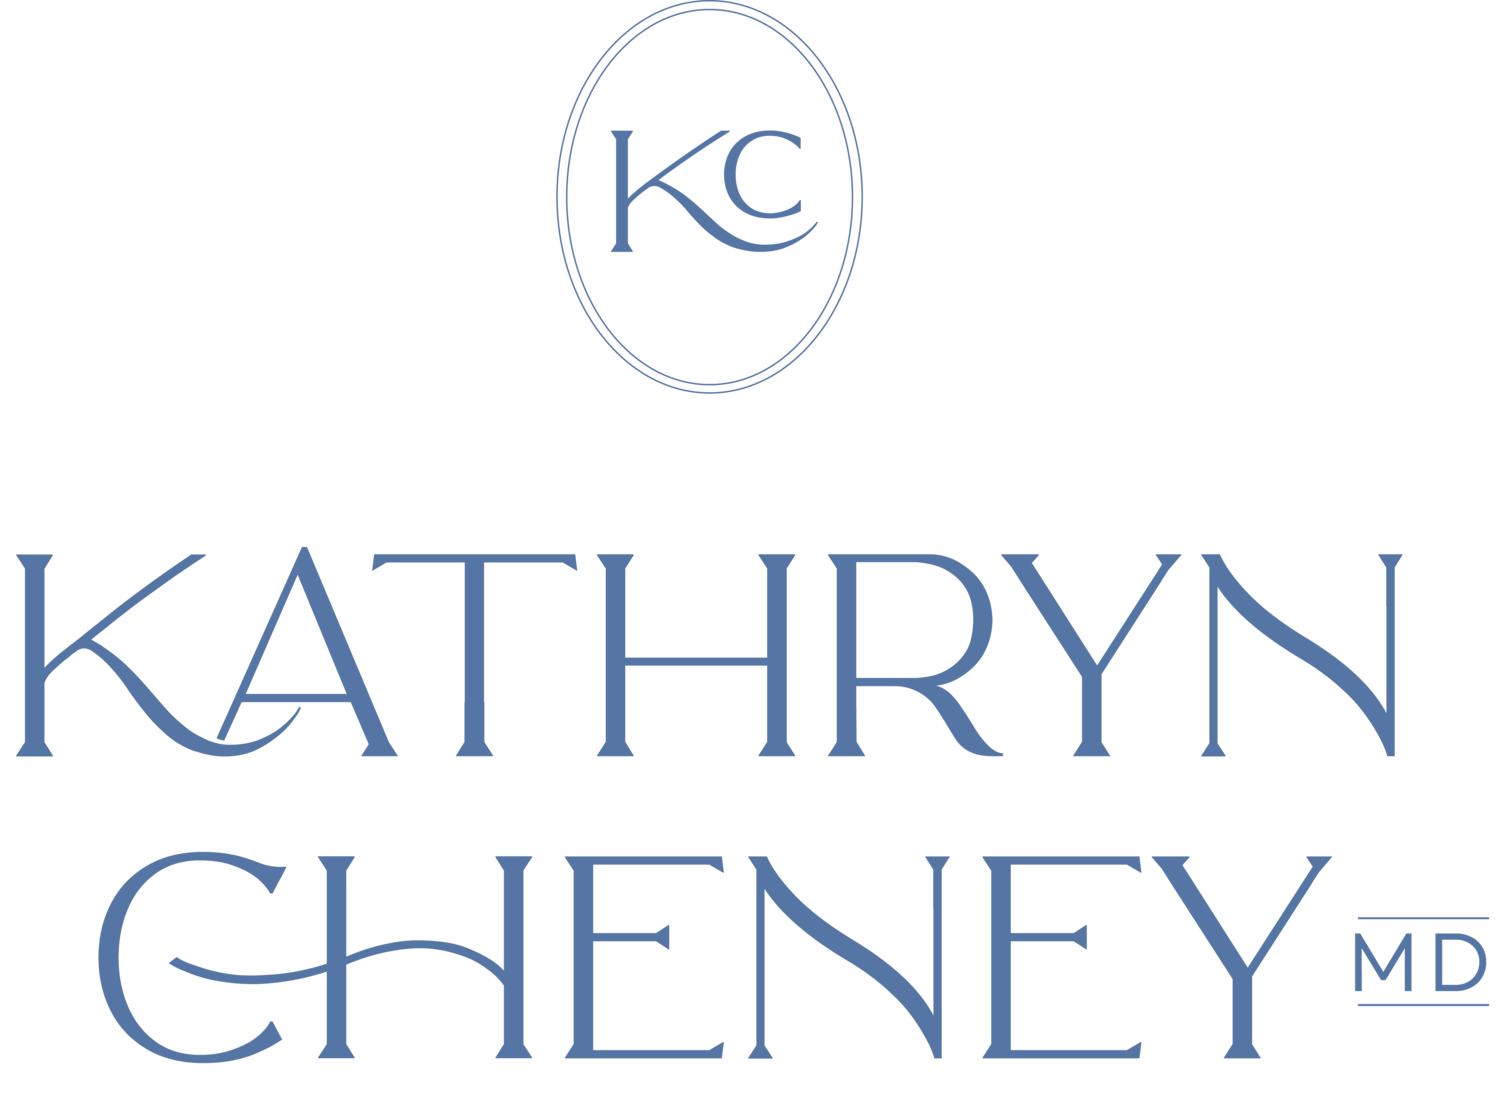 Kathryn Cheney